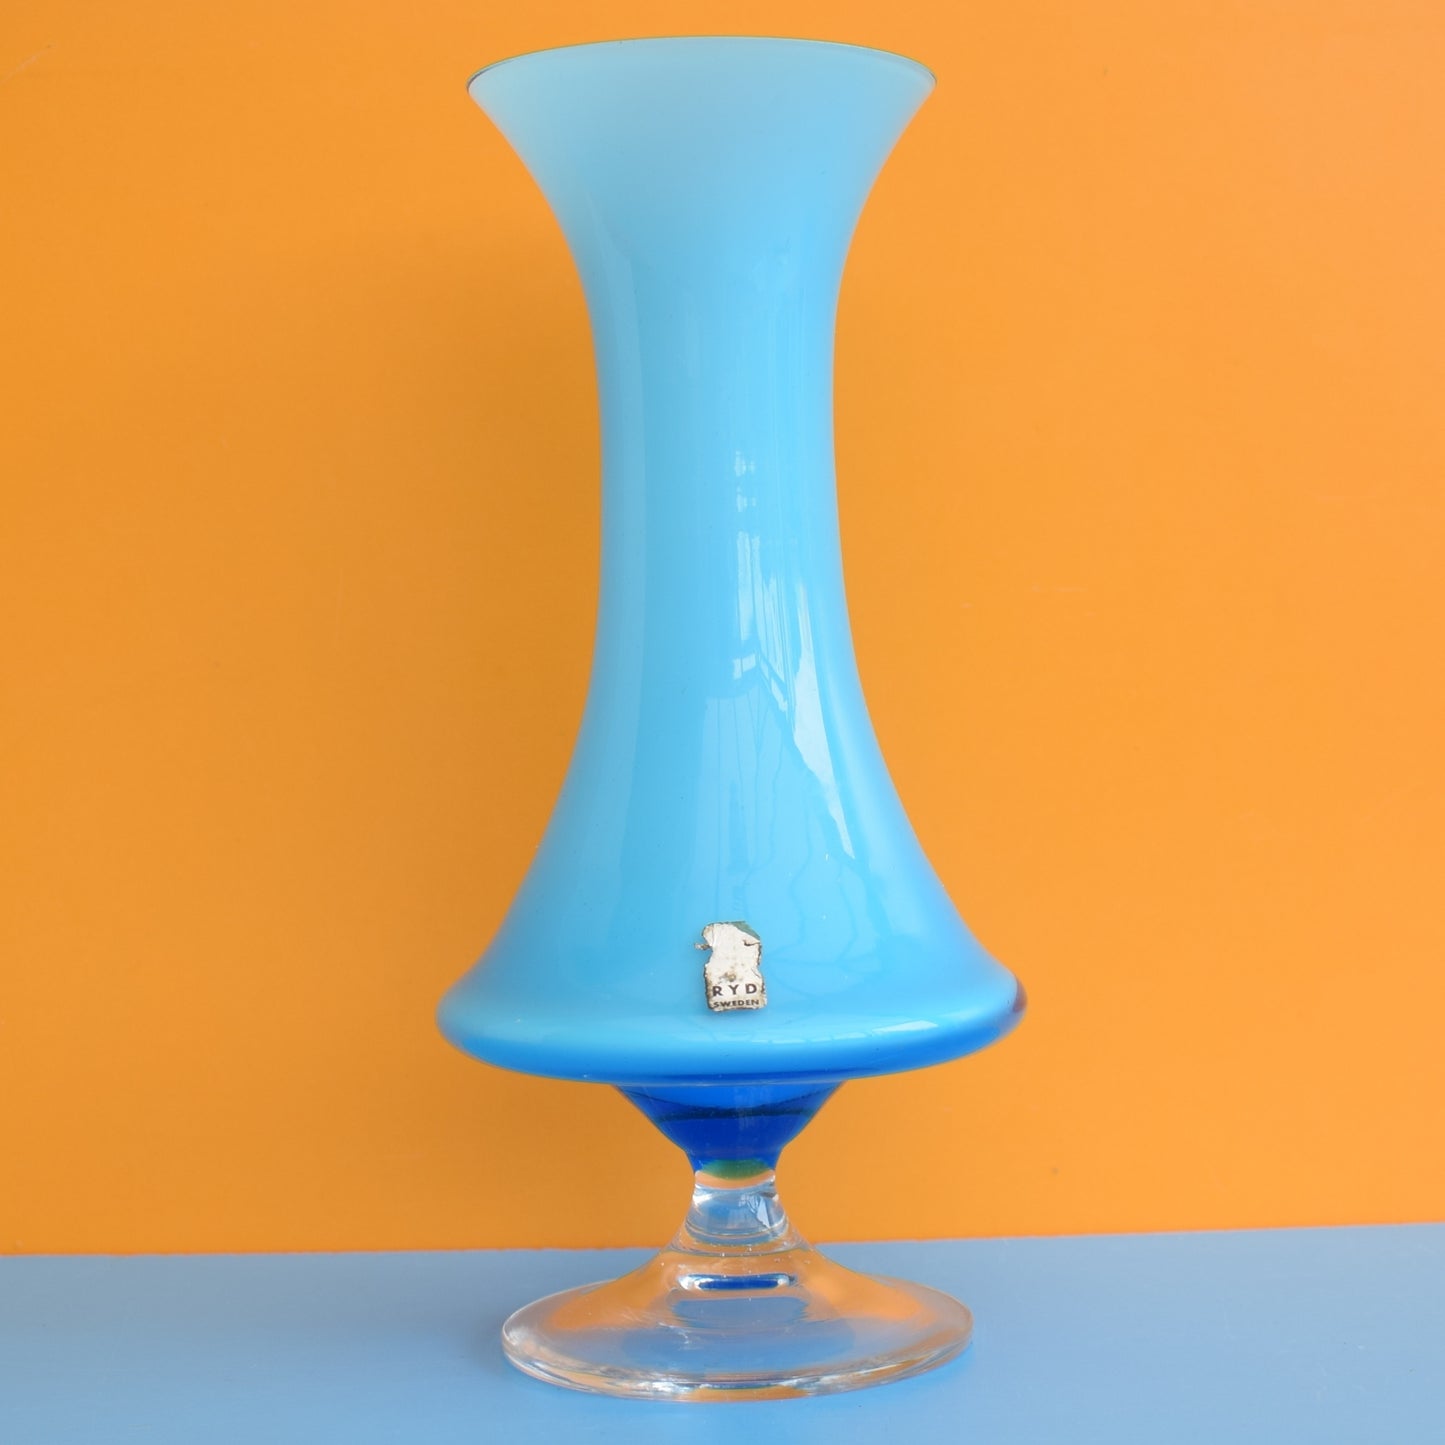 Vintage 1960s Cased Glass Vase - RYD Sweden